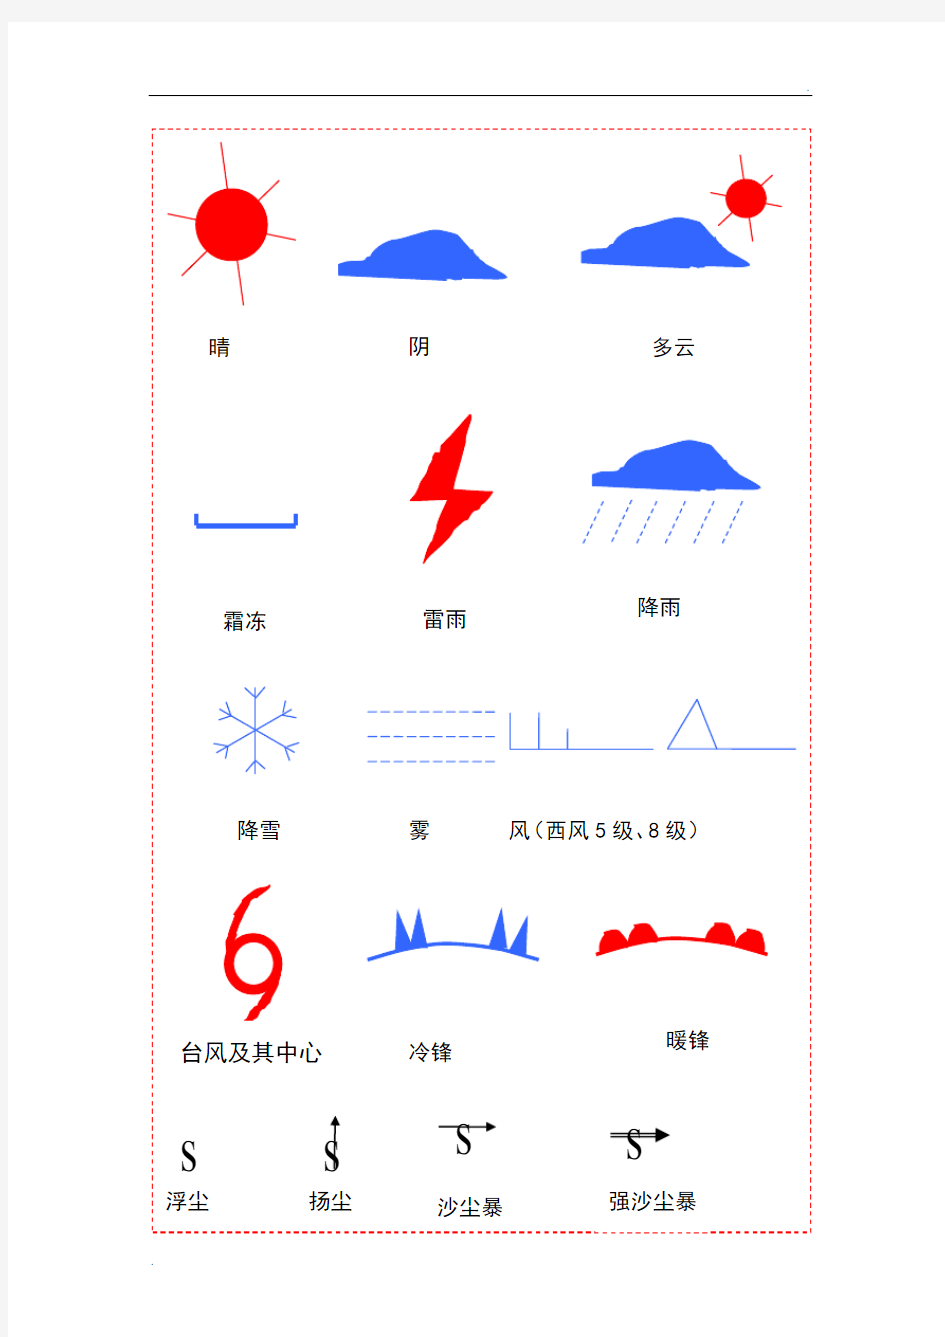 天气预报常用符号 (2)